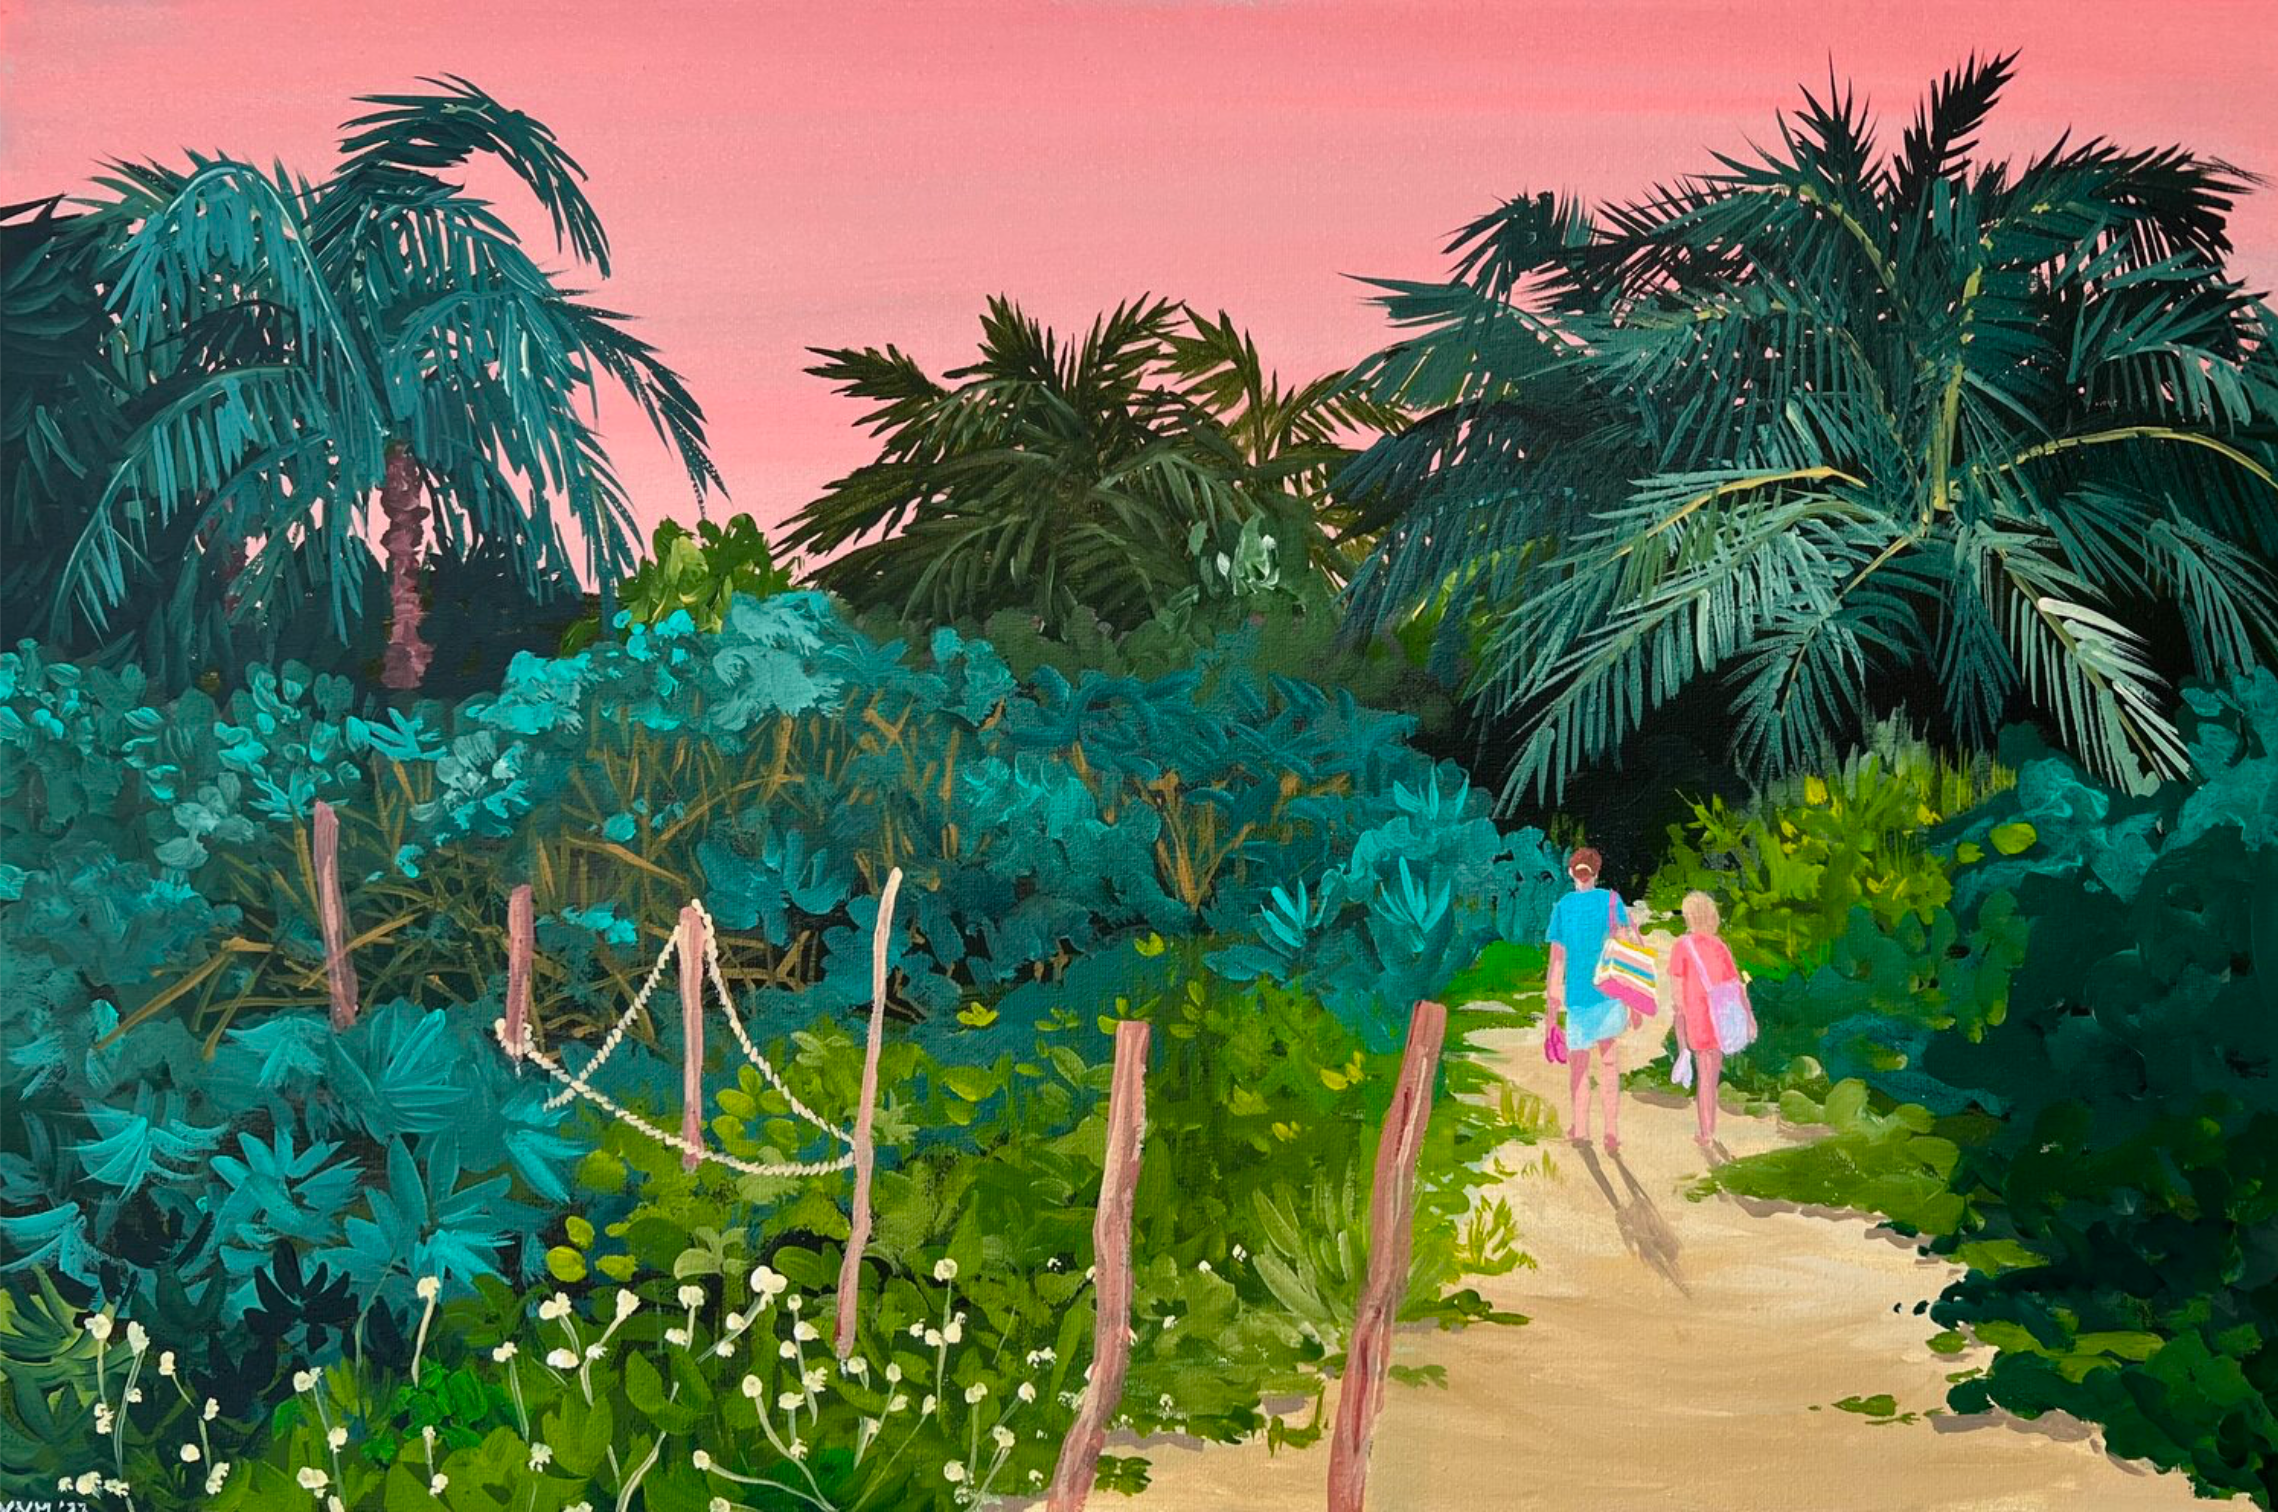 Vanessa van Meerhaeghe ist eine in Brüssel ansässige Malerin. Ihr Gemälde "The end of the day" zeigt wie die Sonne hinter dem Horizont verschwindet, erstrahlt der Himmel in einem orange-rosa Abendlicht. Vor diesem Hintergrund reisen zwei entfernte Figuren – eine Frau und ein Mädchen – vom Strand zurück.